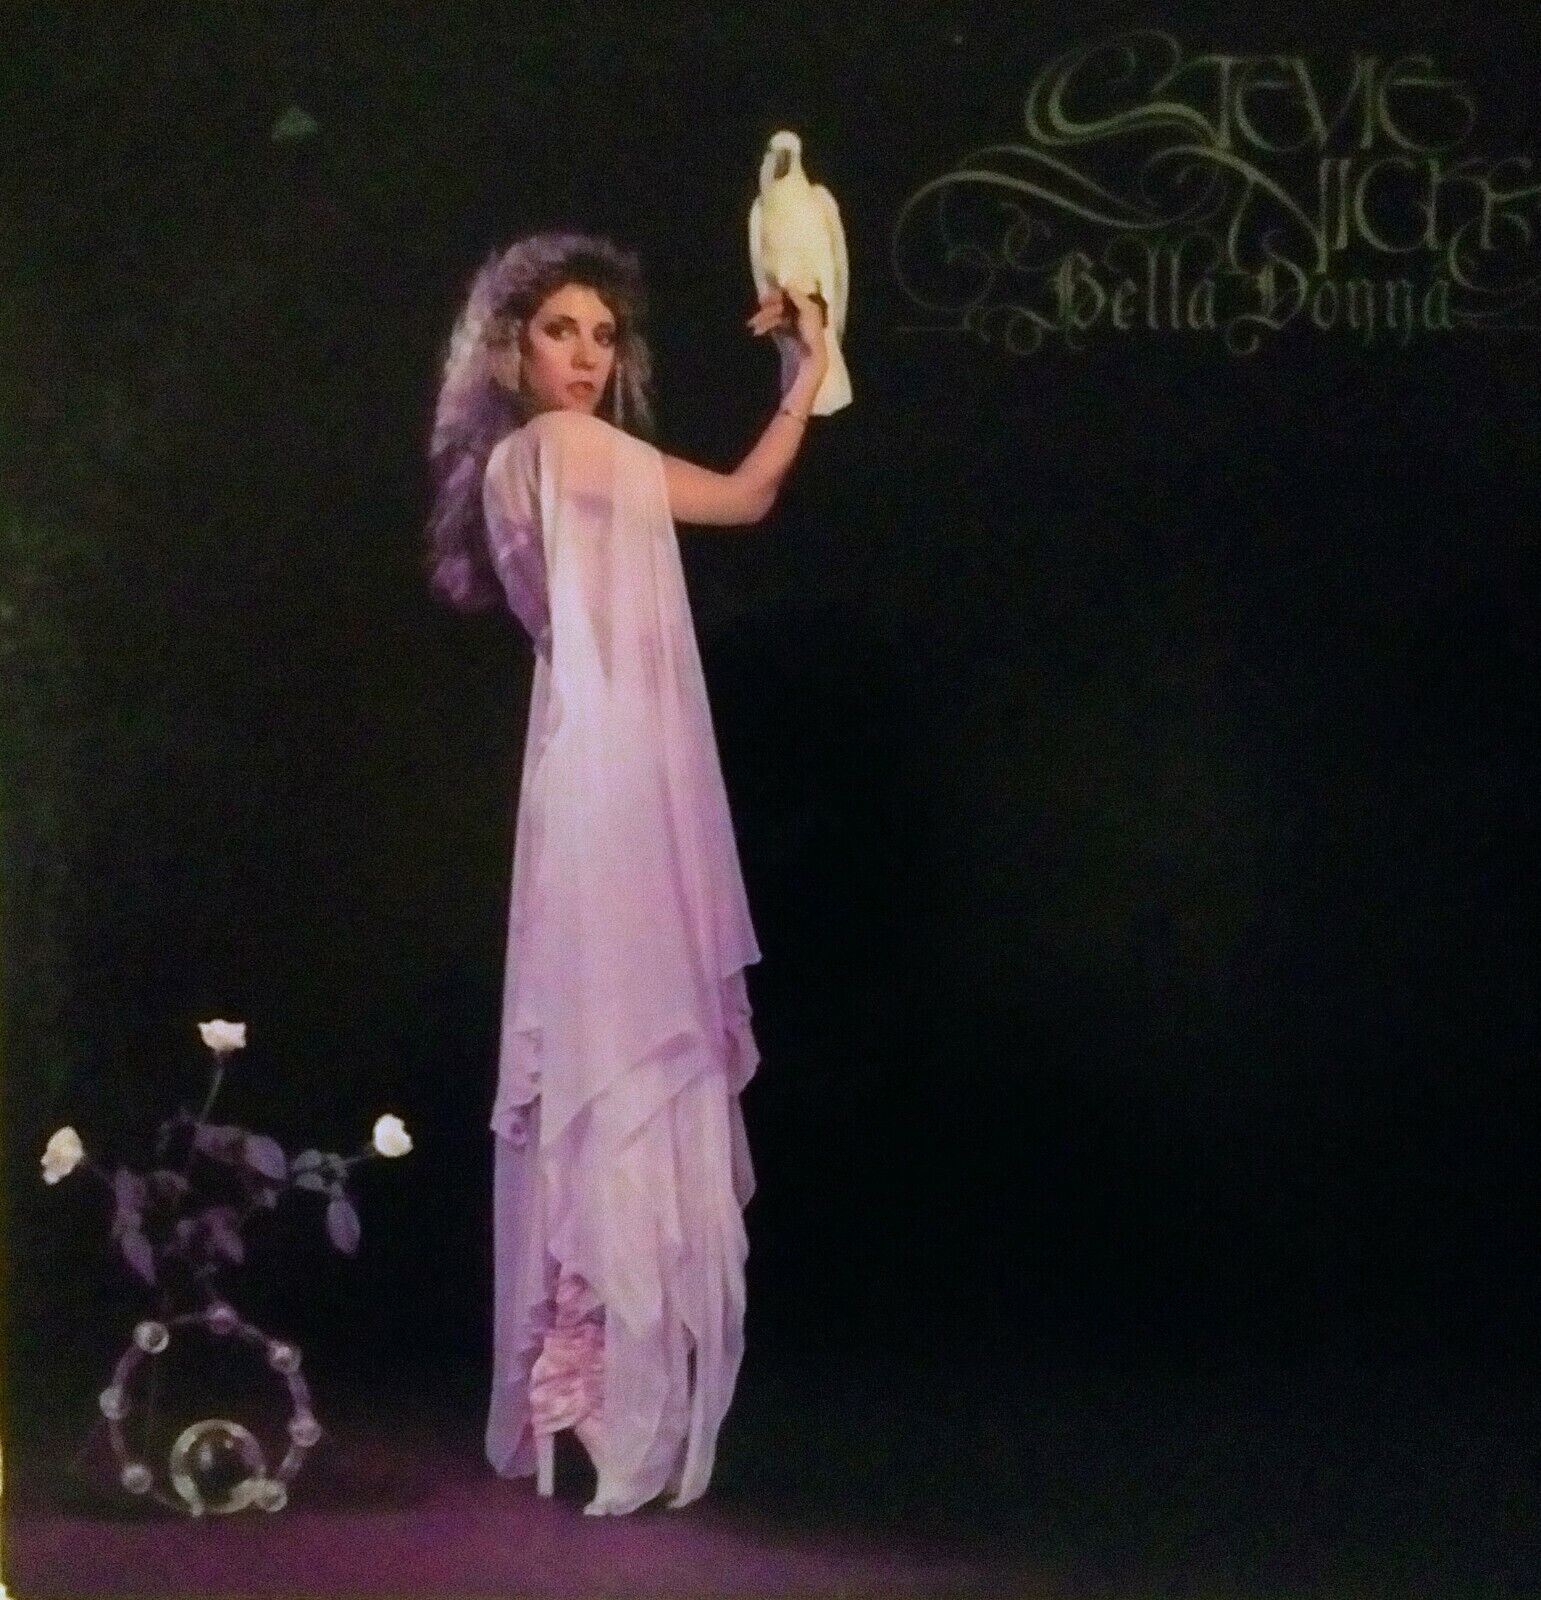 Stevie Nicks - Bella Donna (vinyl, LP, album) 